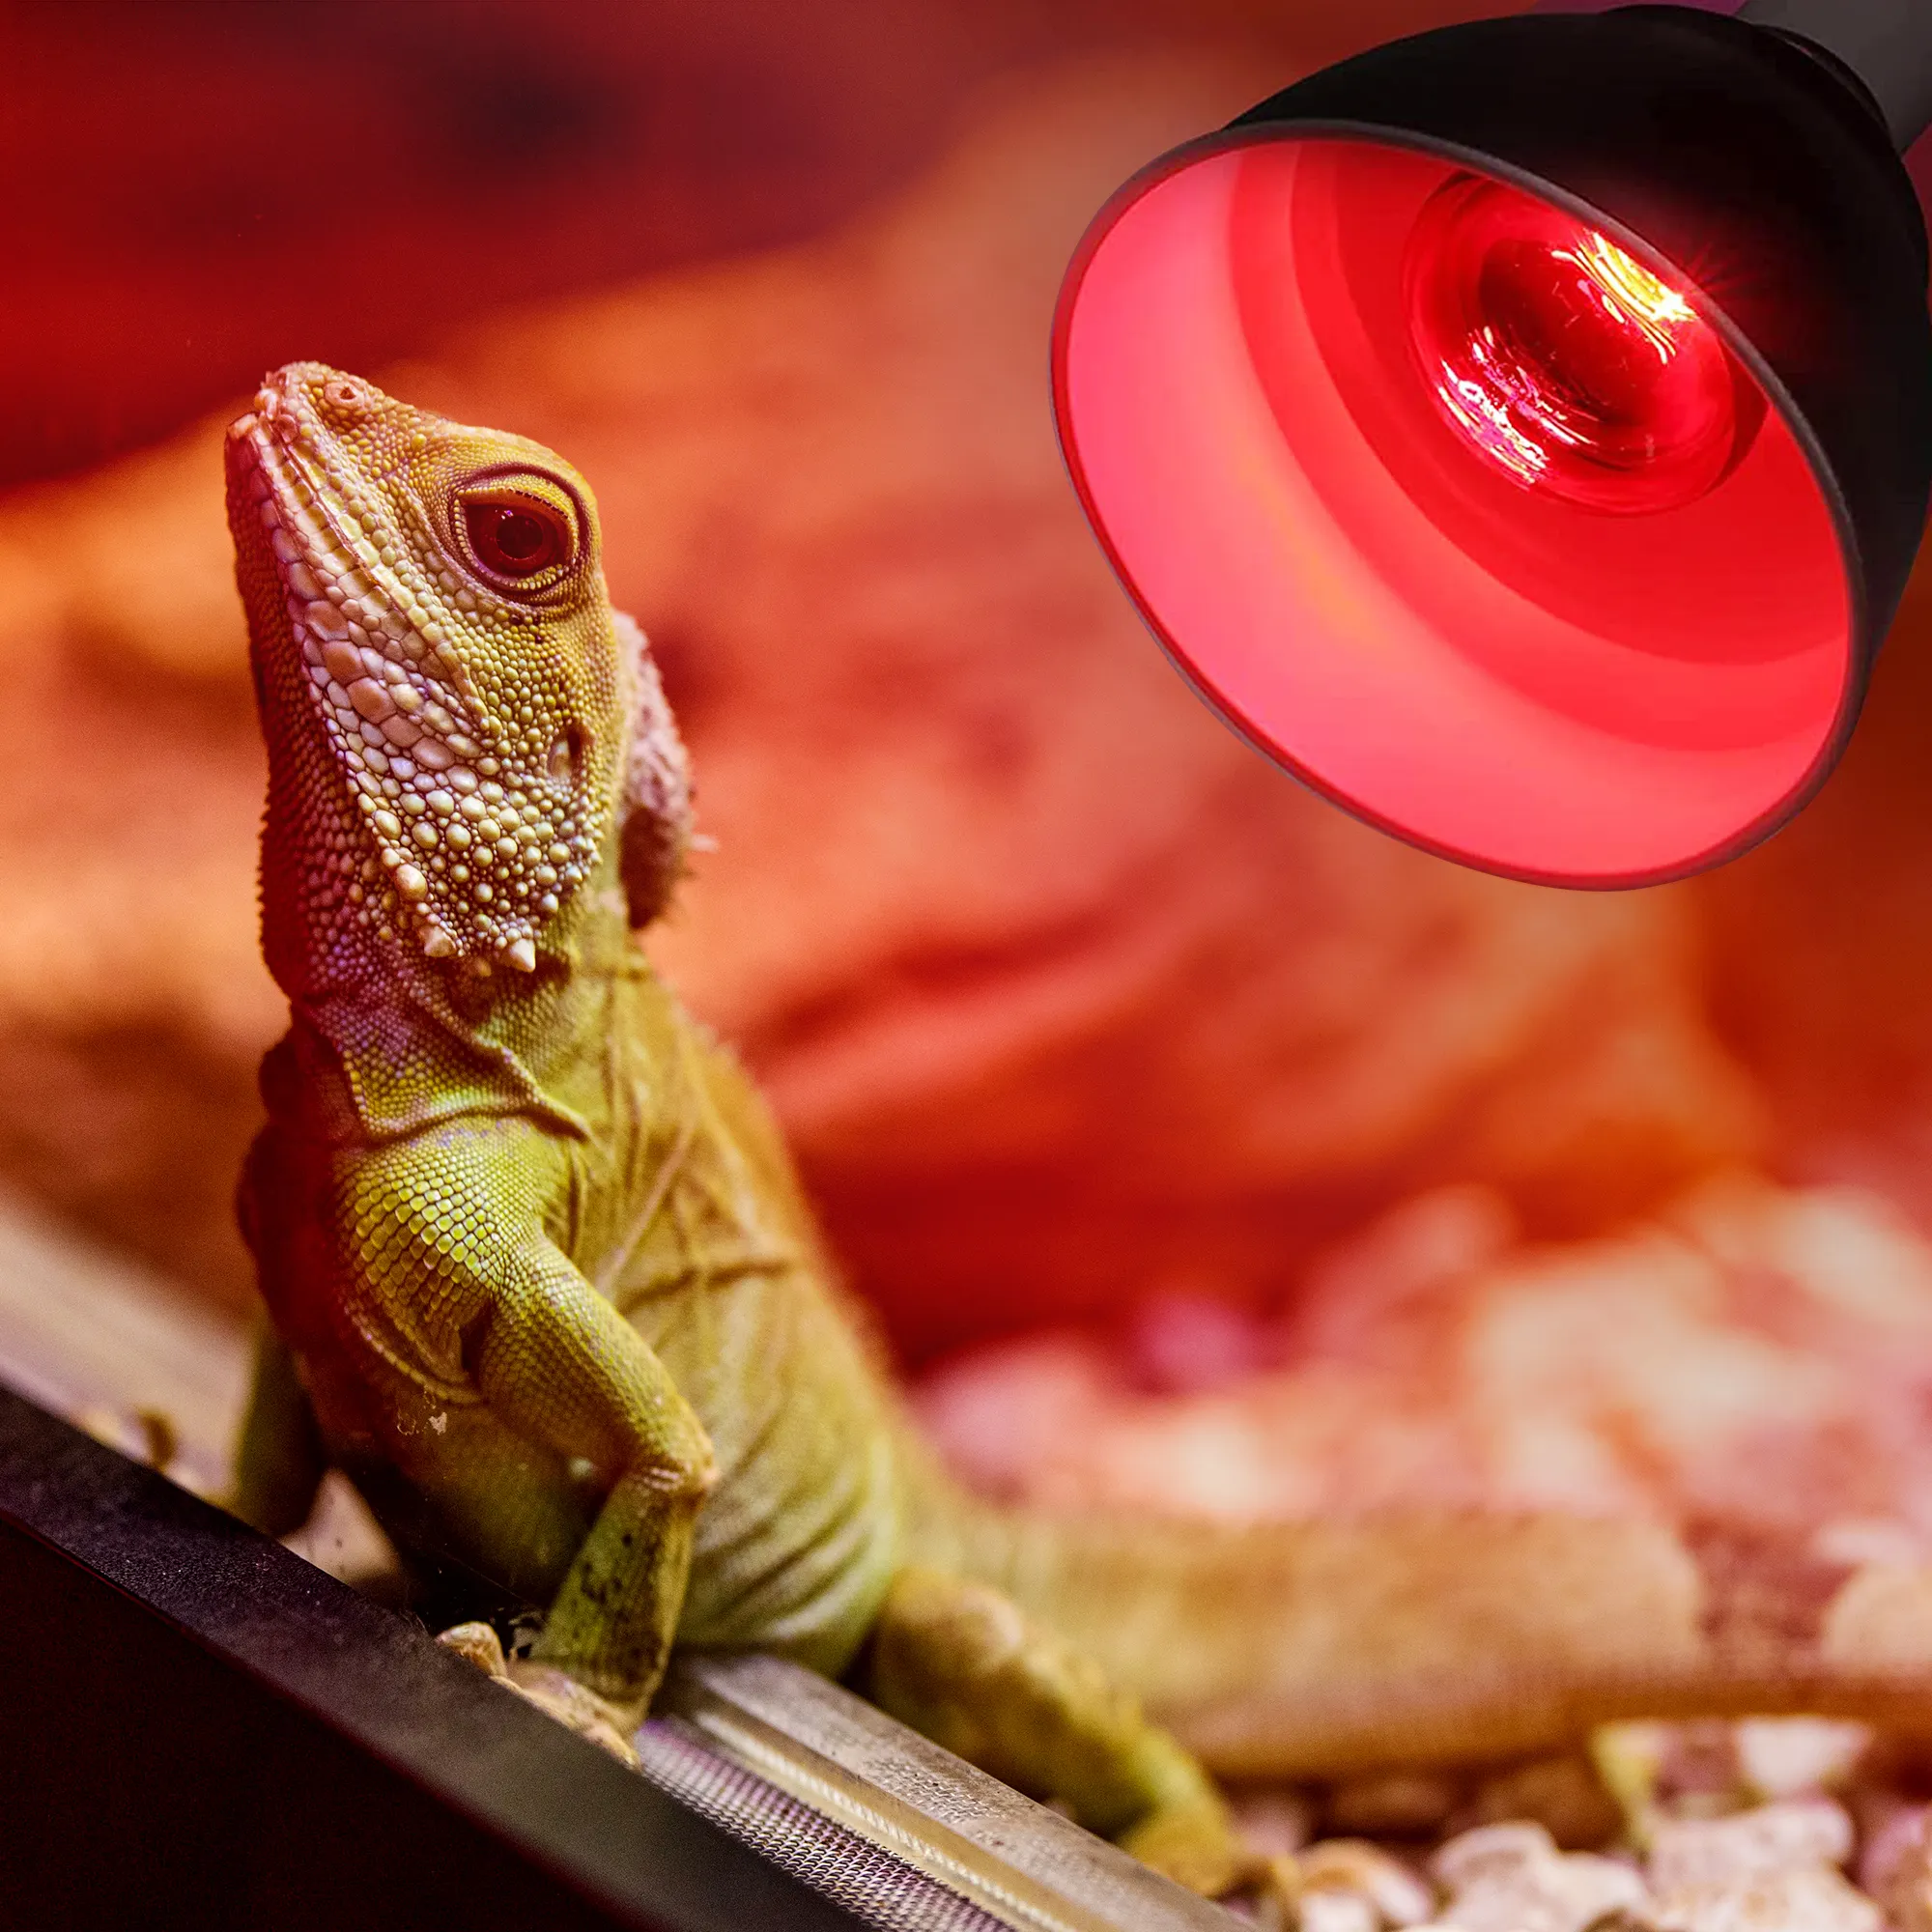 New rettile bassing Sun Bulb Lamp lampadina riflettore in vetro rosso lampadina 250W Basking Spot Lamp riscaldamento rettile lampadina a infrarossi